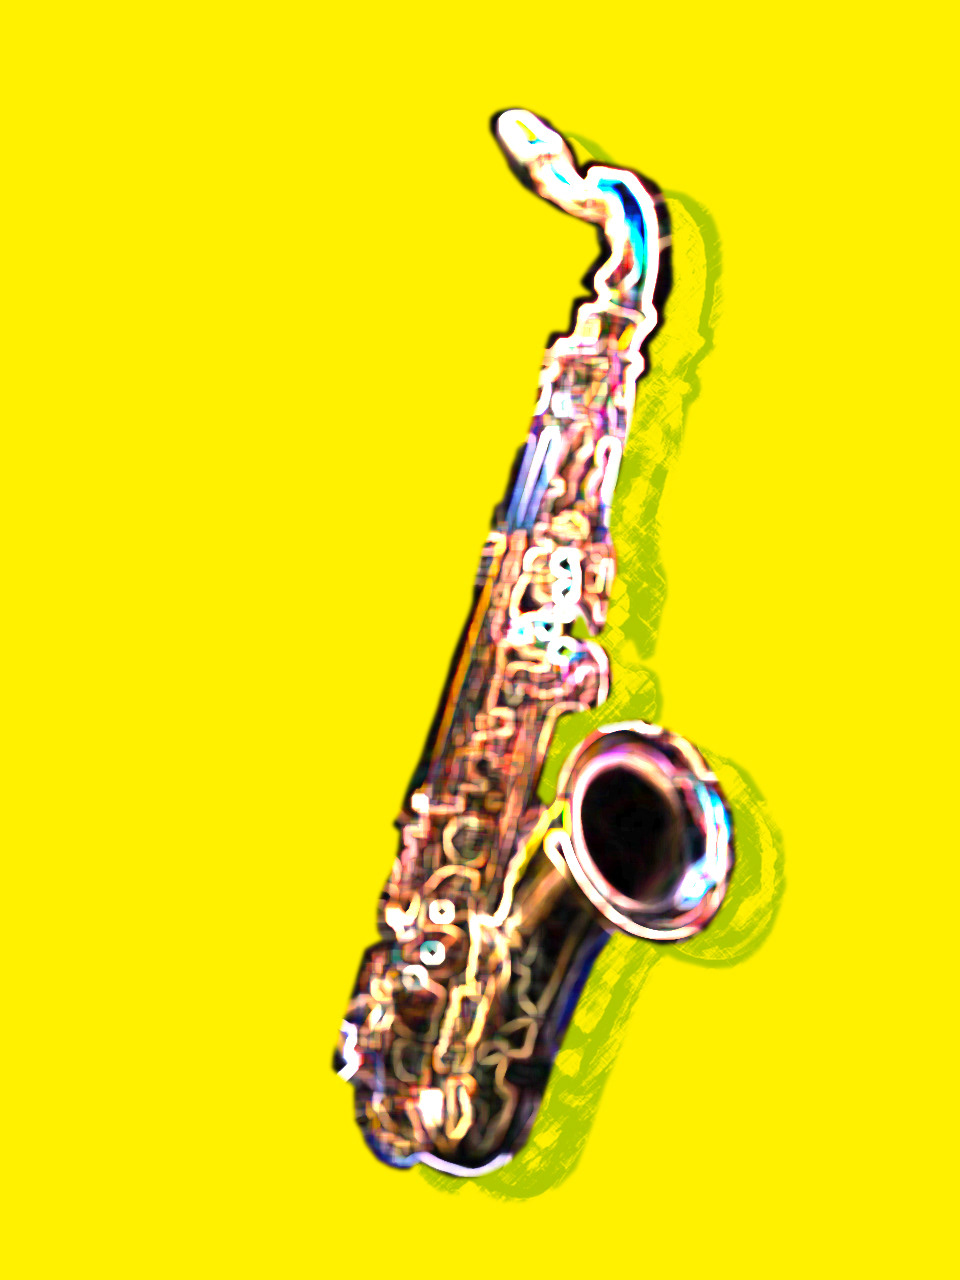 saxophone trumpet jazz TRUMPETER photoshop instrument photo musician portrait Jazzman